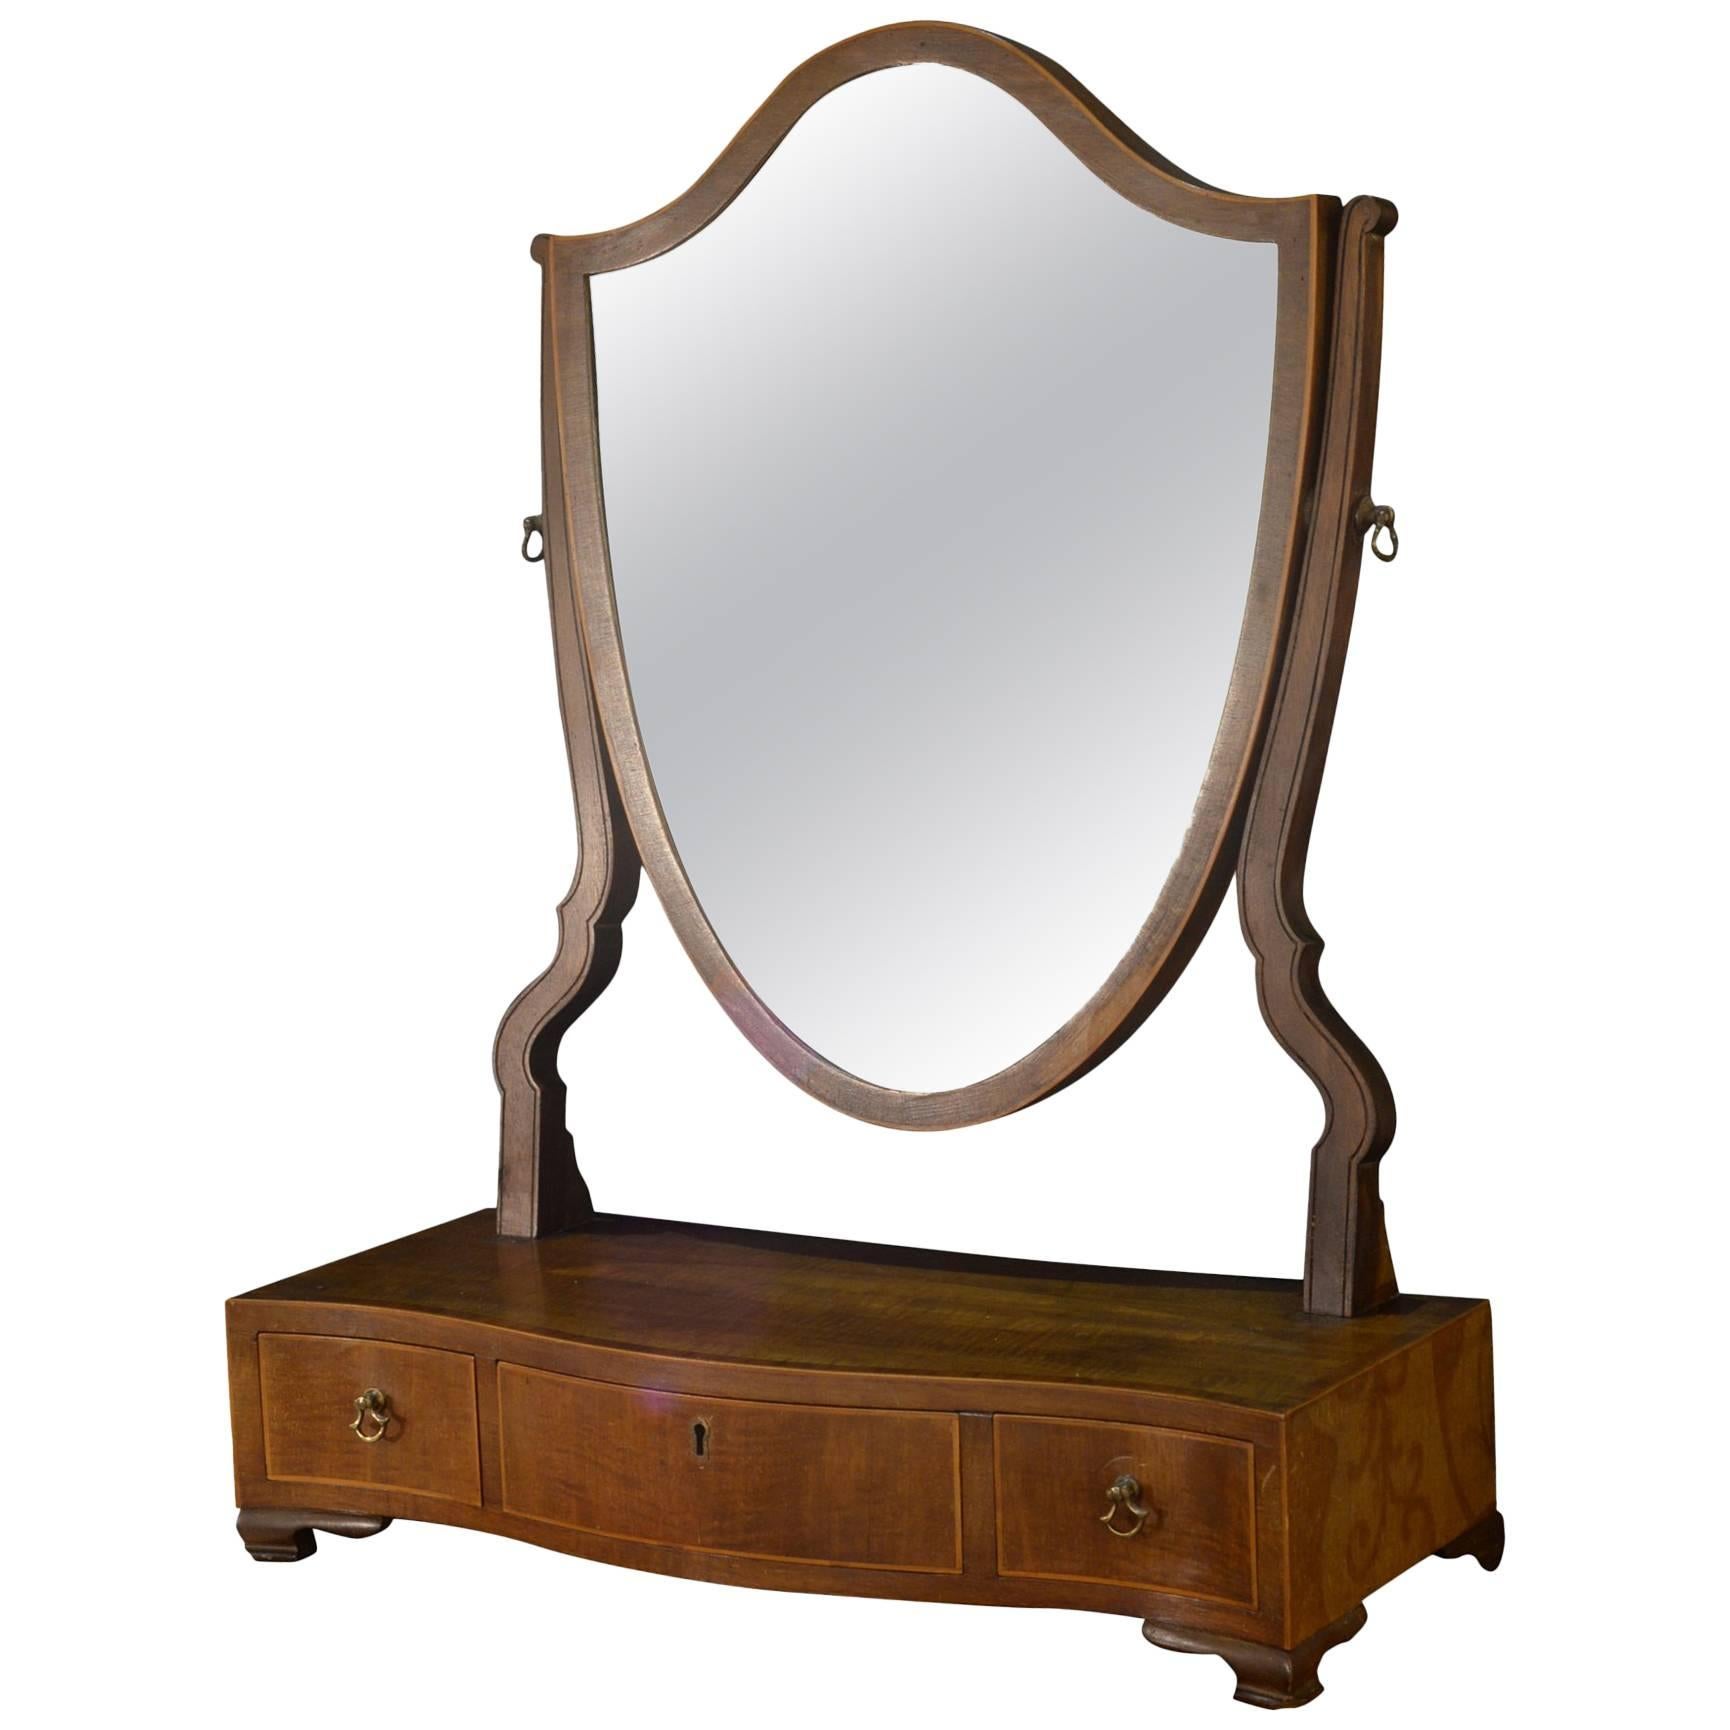 19th Century Mahogany Dressing Table Mirror